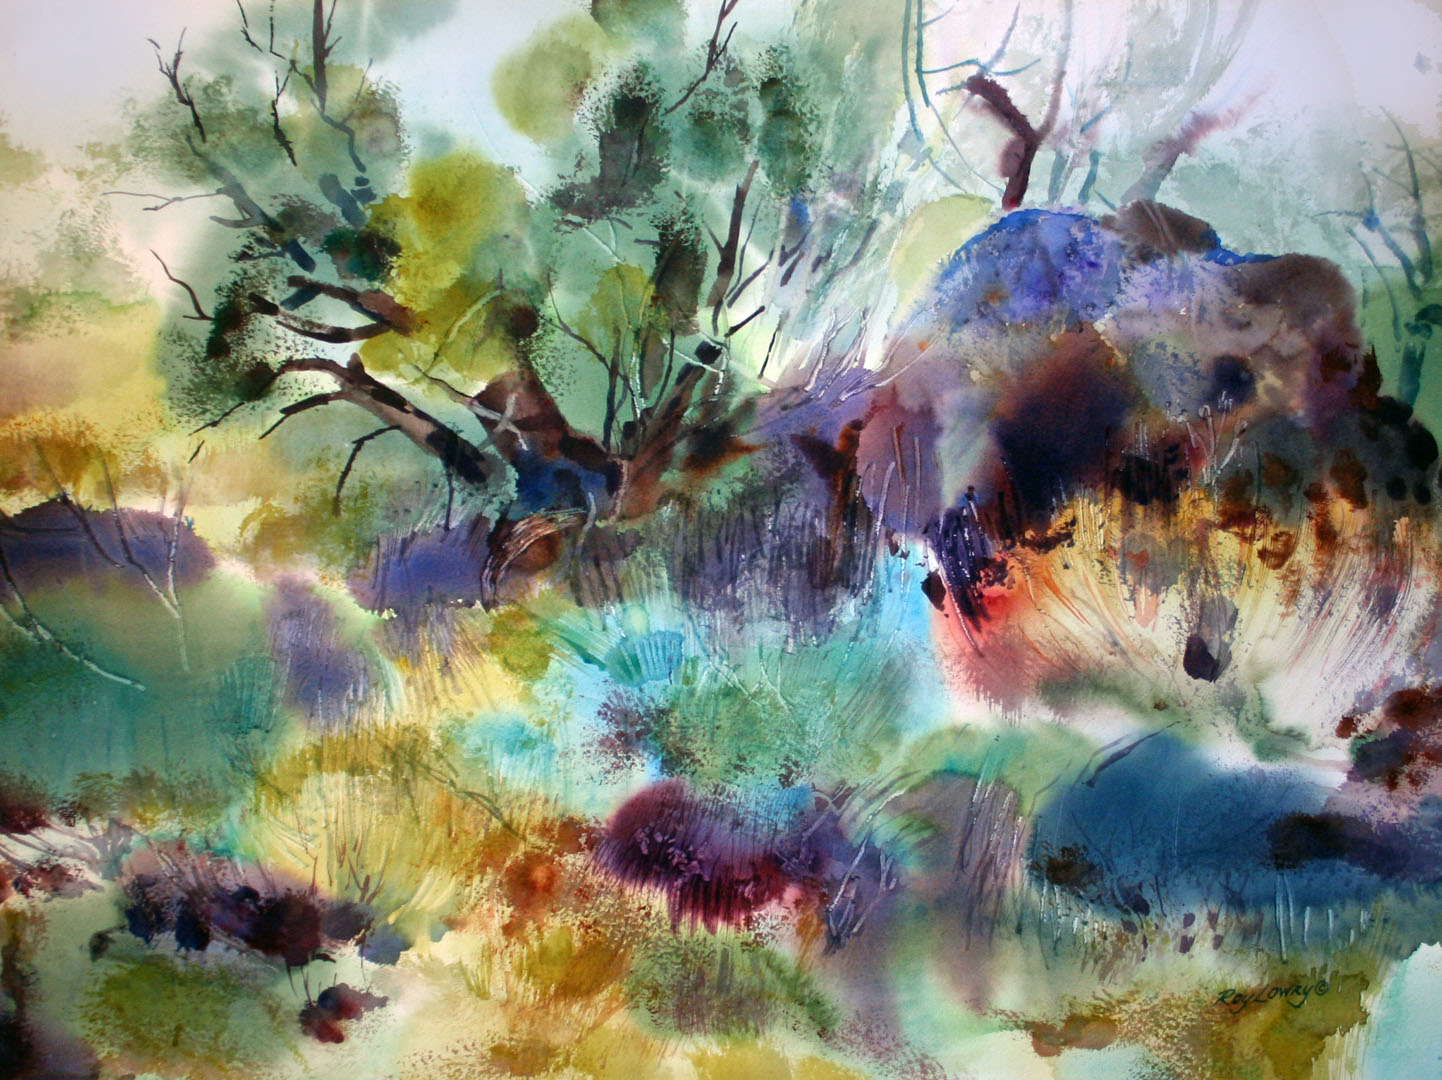 Desert Textures, Watercolor on paper, 30 x 22